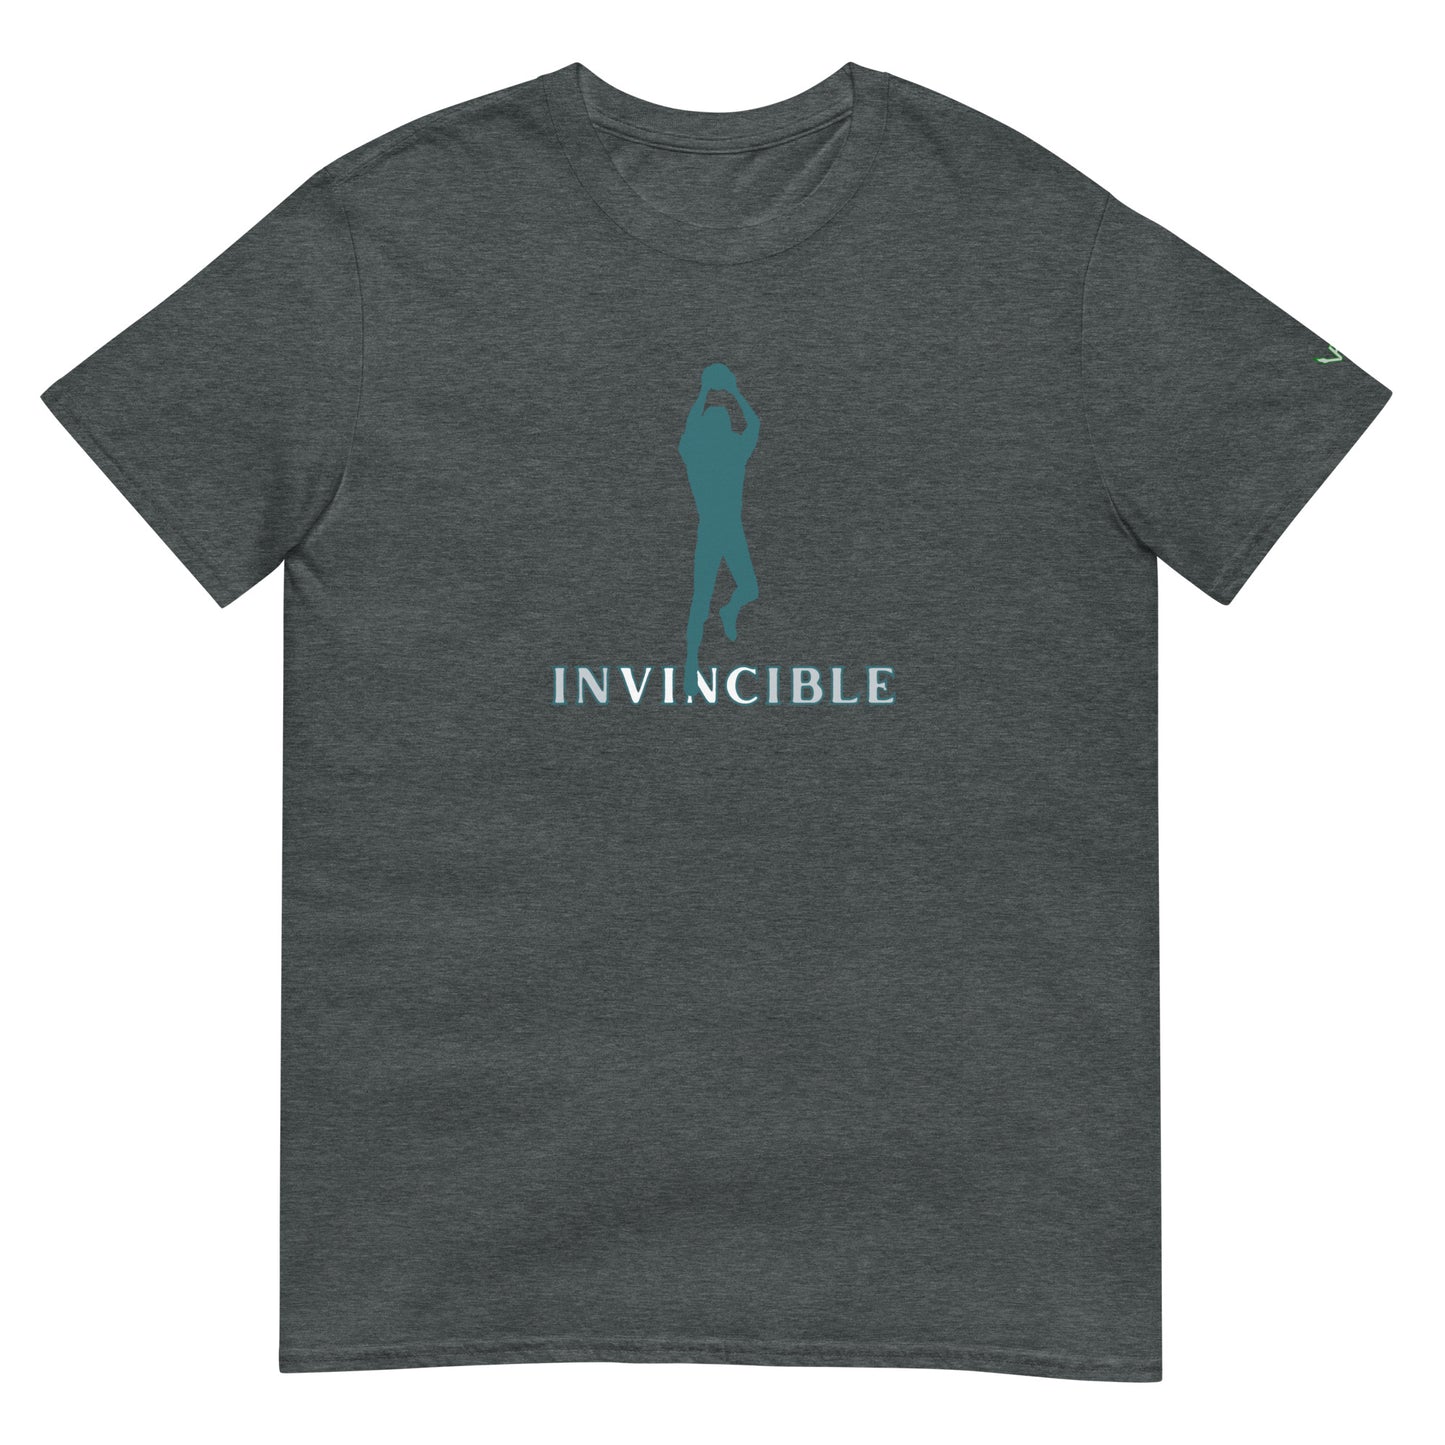 Vince Papale Invincible Logo T